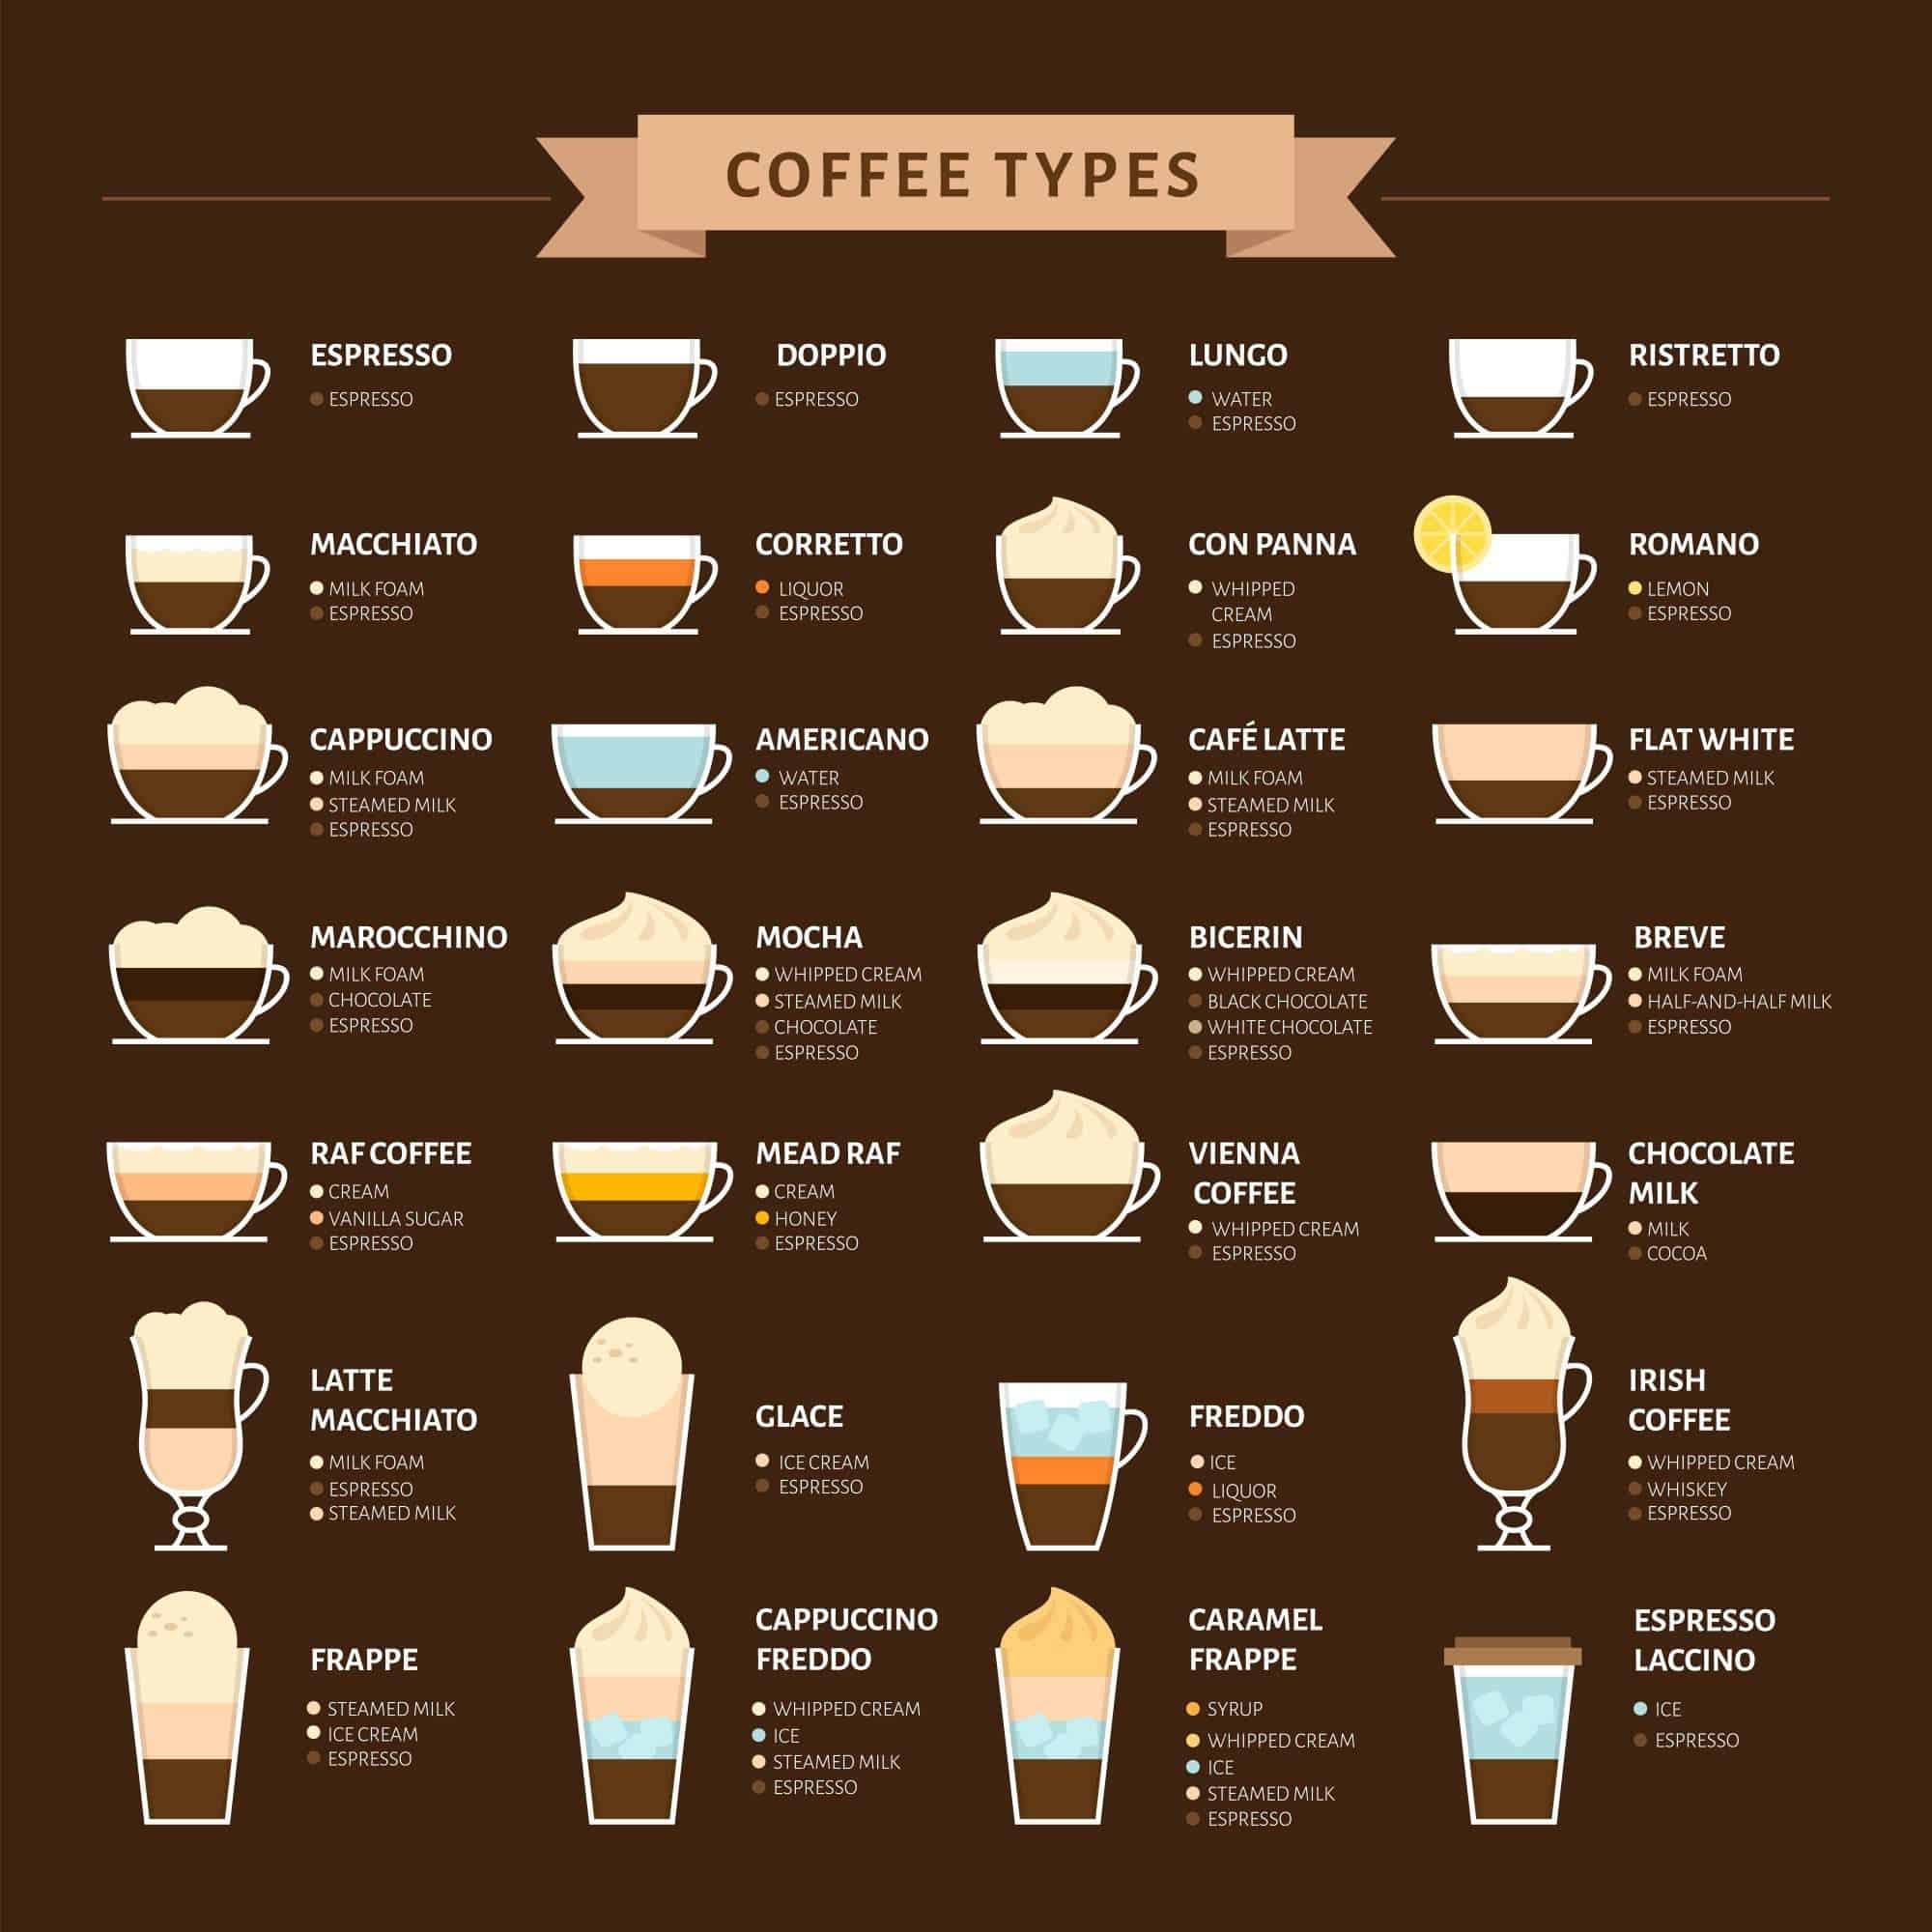 Виды кофе, описание и отличие кофейных напитков, а также история кофе